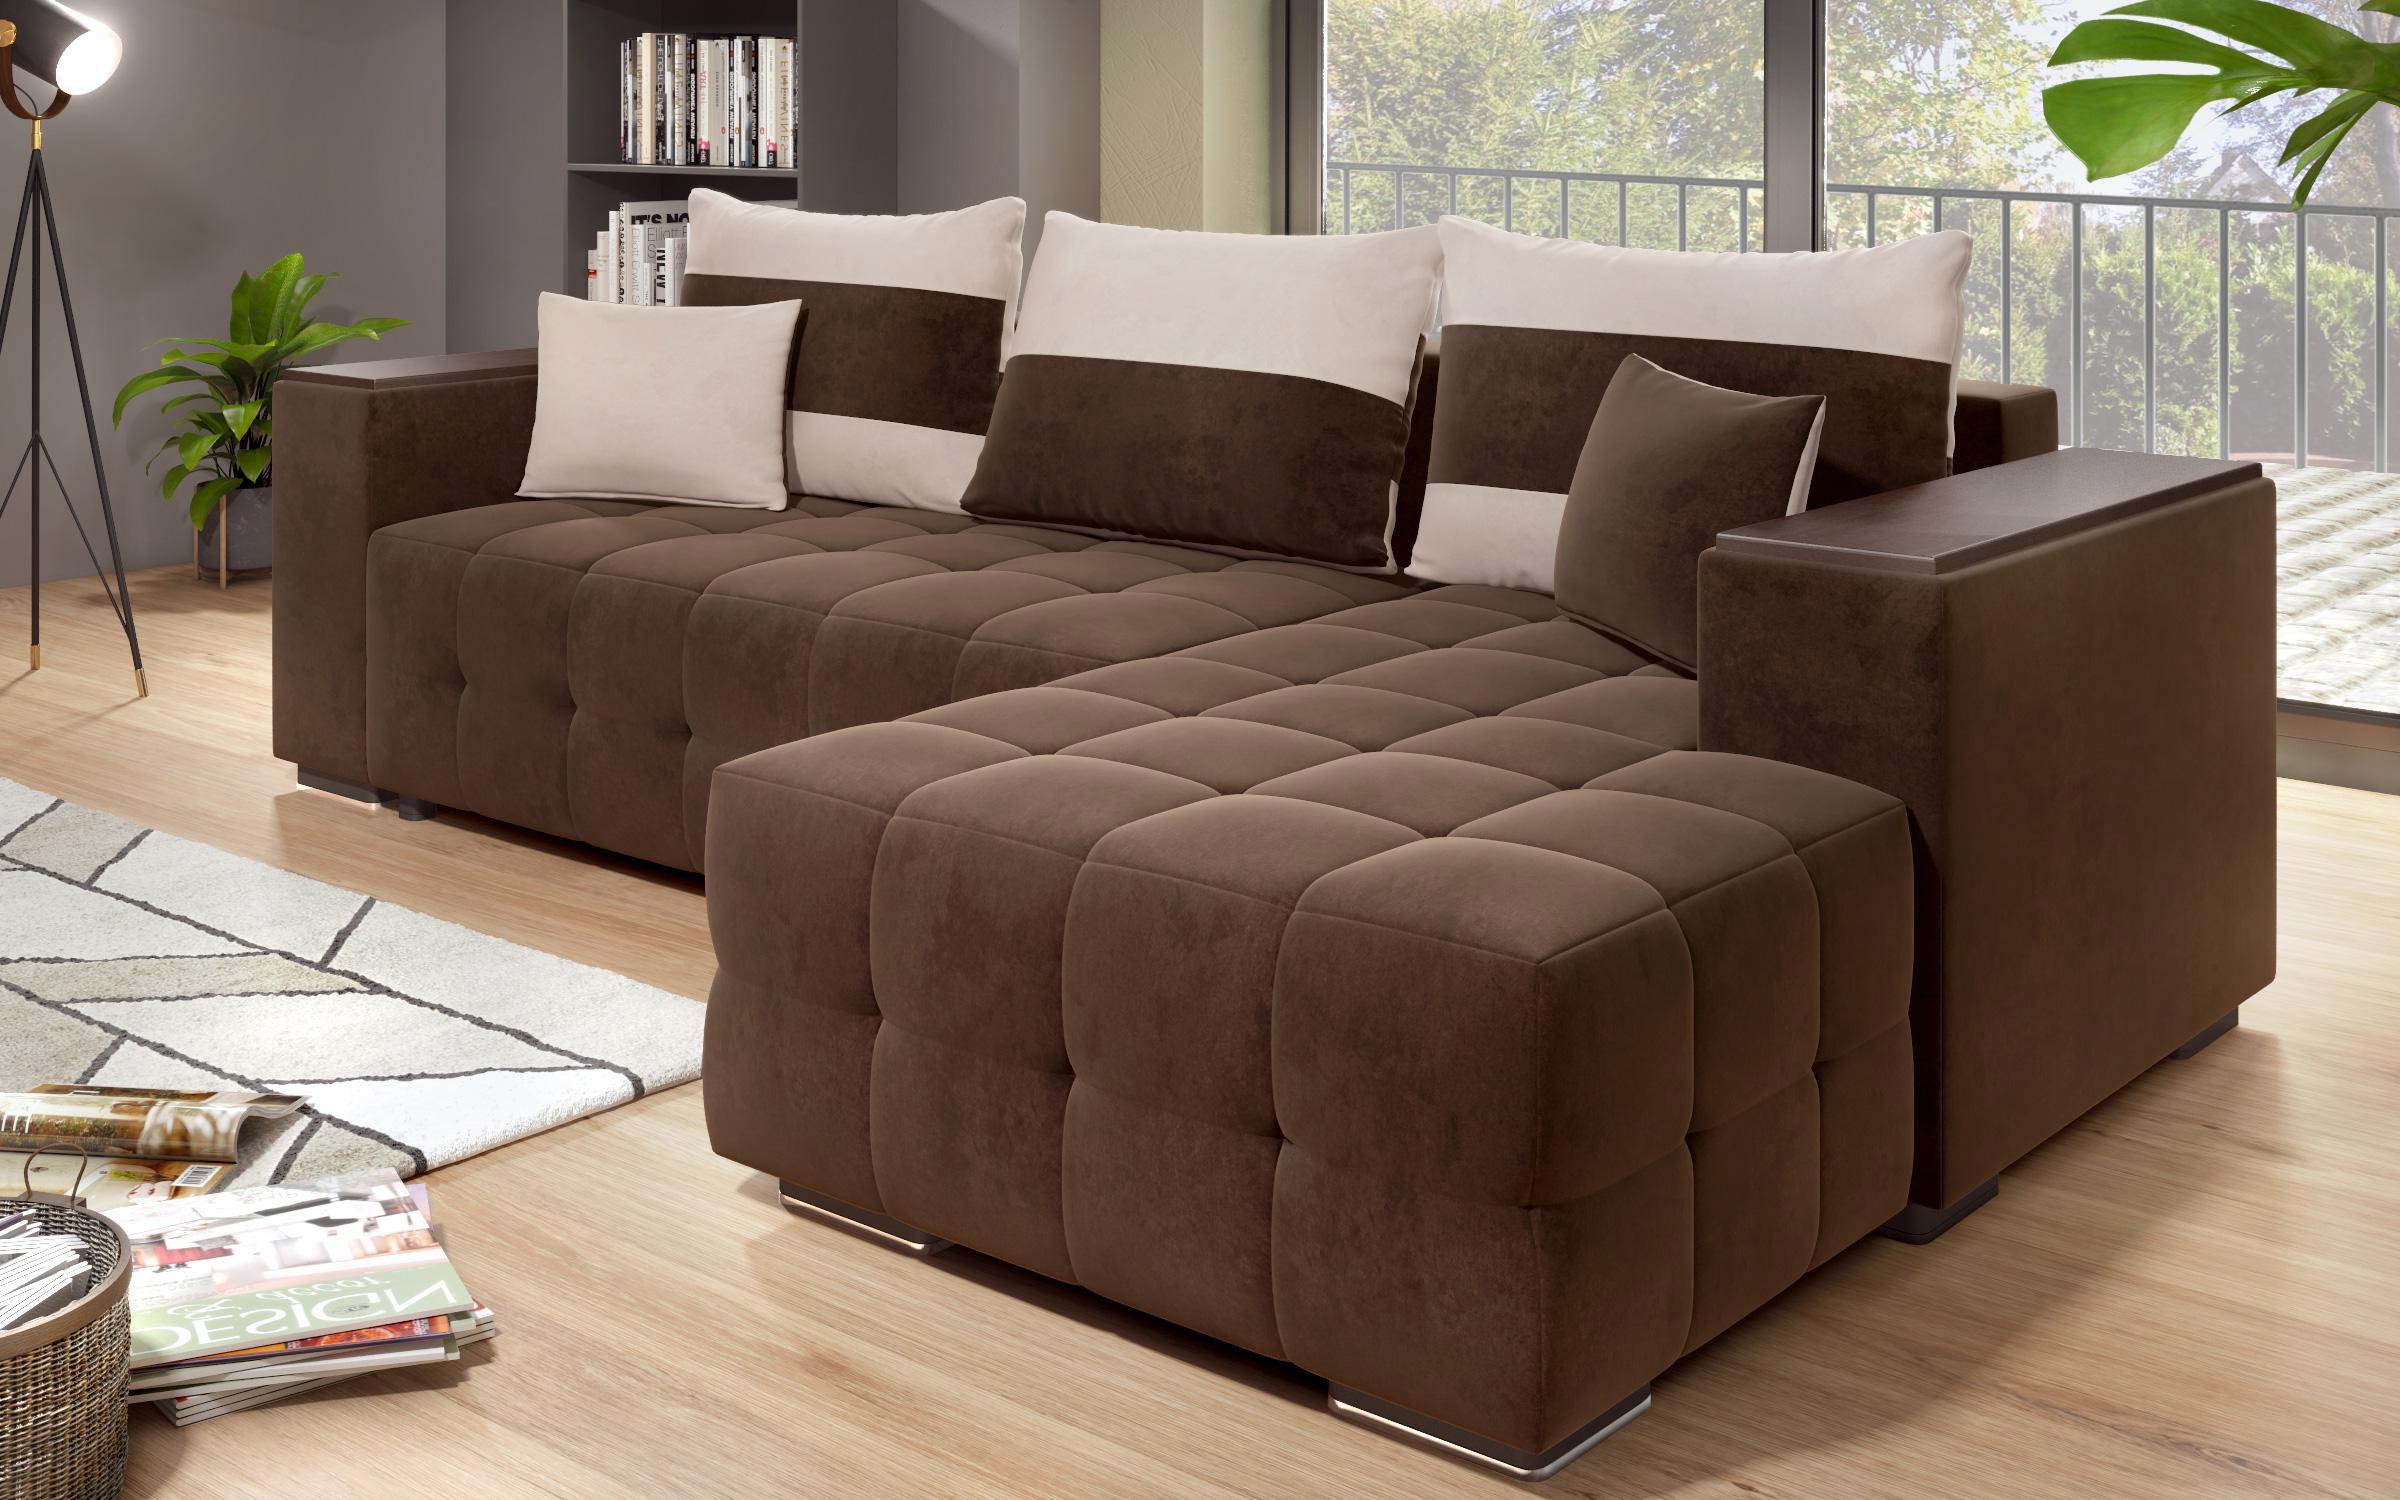 Γωνιακός καναπές - κρεβάτι με ανάκλιντρο και μπράτσο μίνι ραφιέρα Melvin S, σκούρο καφέ + ανοιχτό μπεζ  9